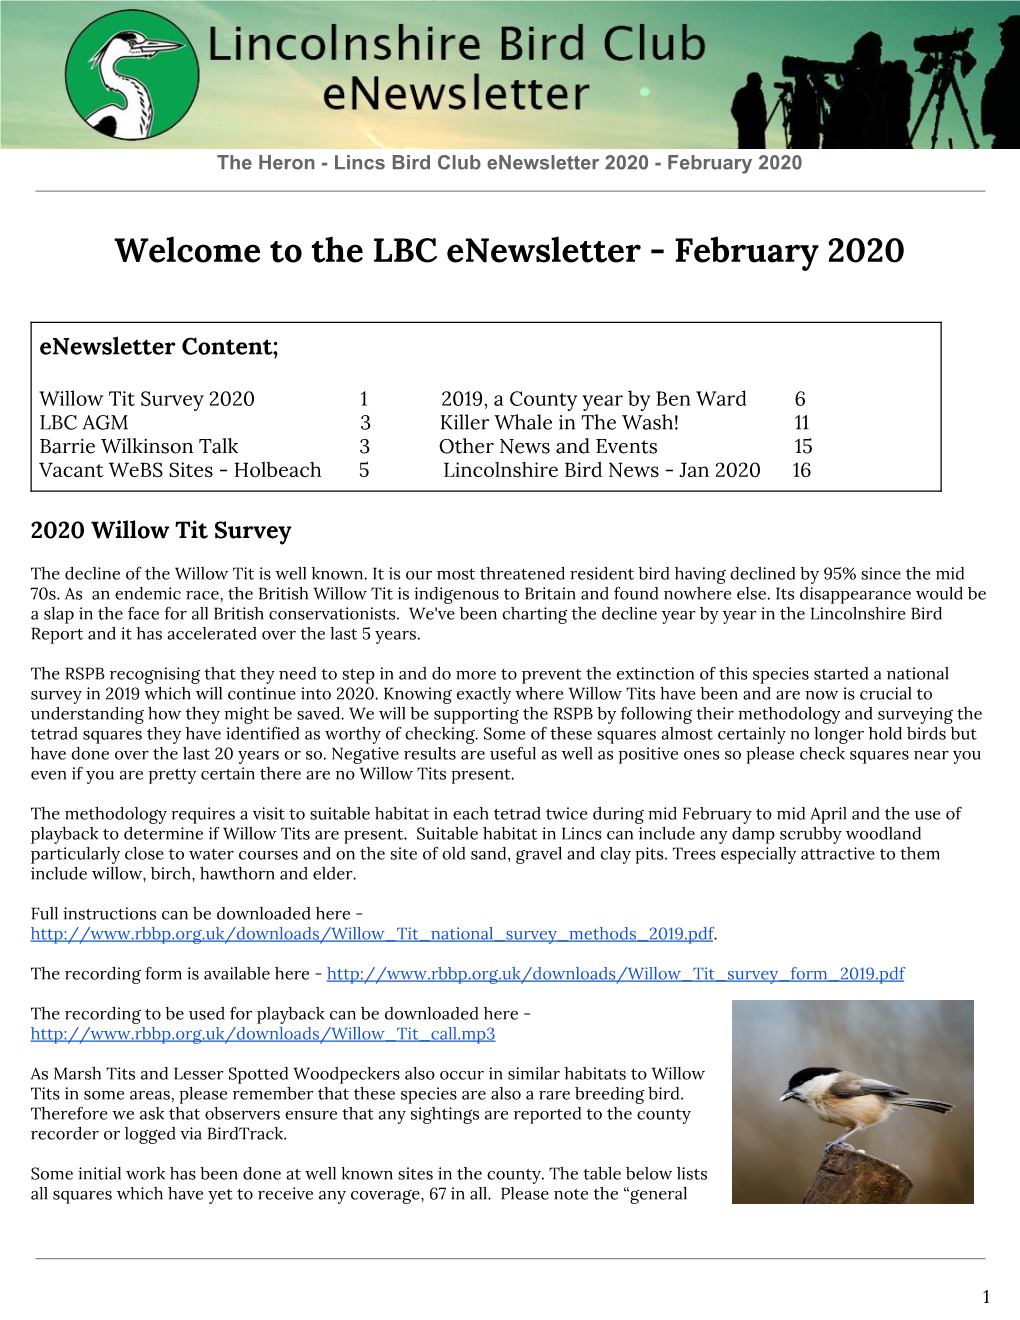 The LBC Enewsletter - February 2020